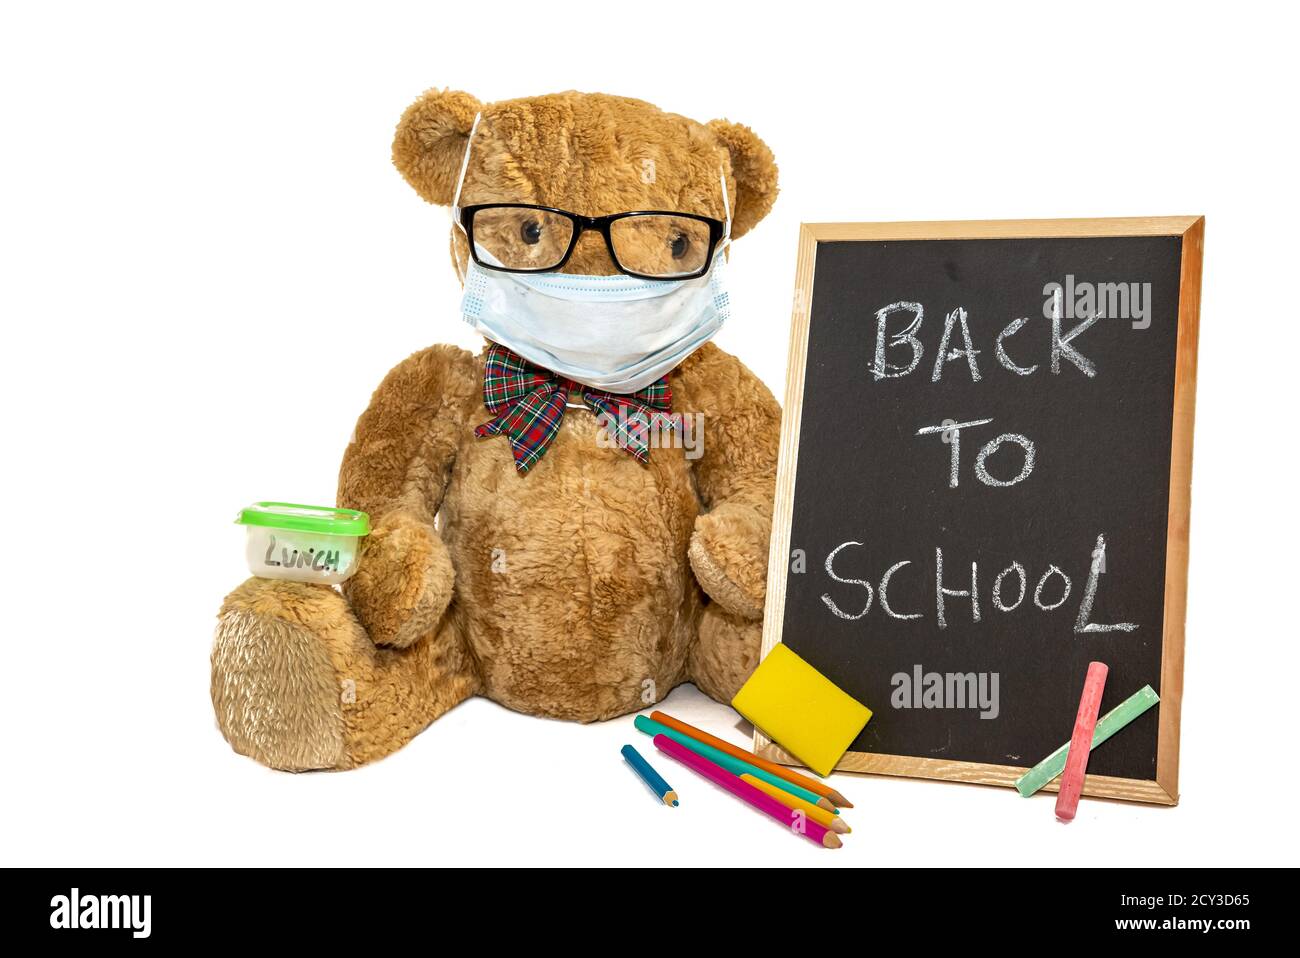 Ours mignon Teddy de retour à l'école portant un masque facial comme protection contre le coronavirus, Covid-19 pandémie. Paysage, espace pour la copie. Banque D'Images